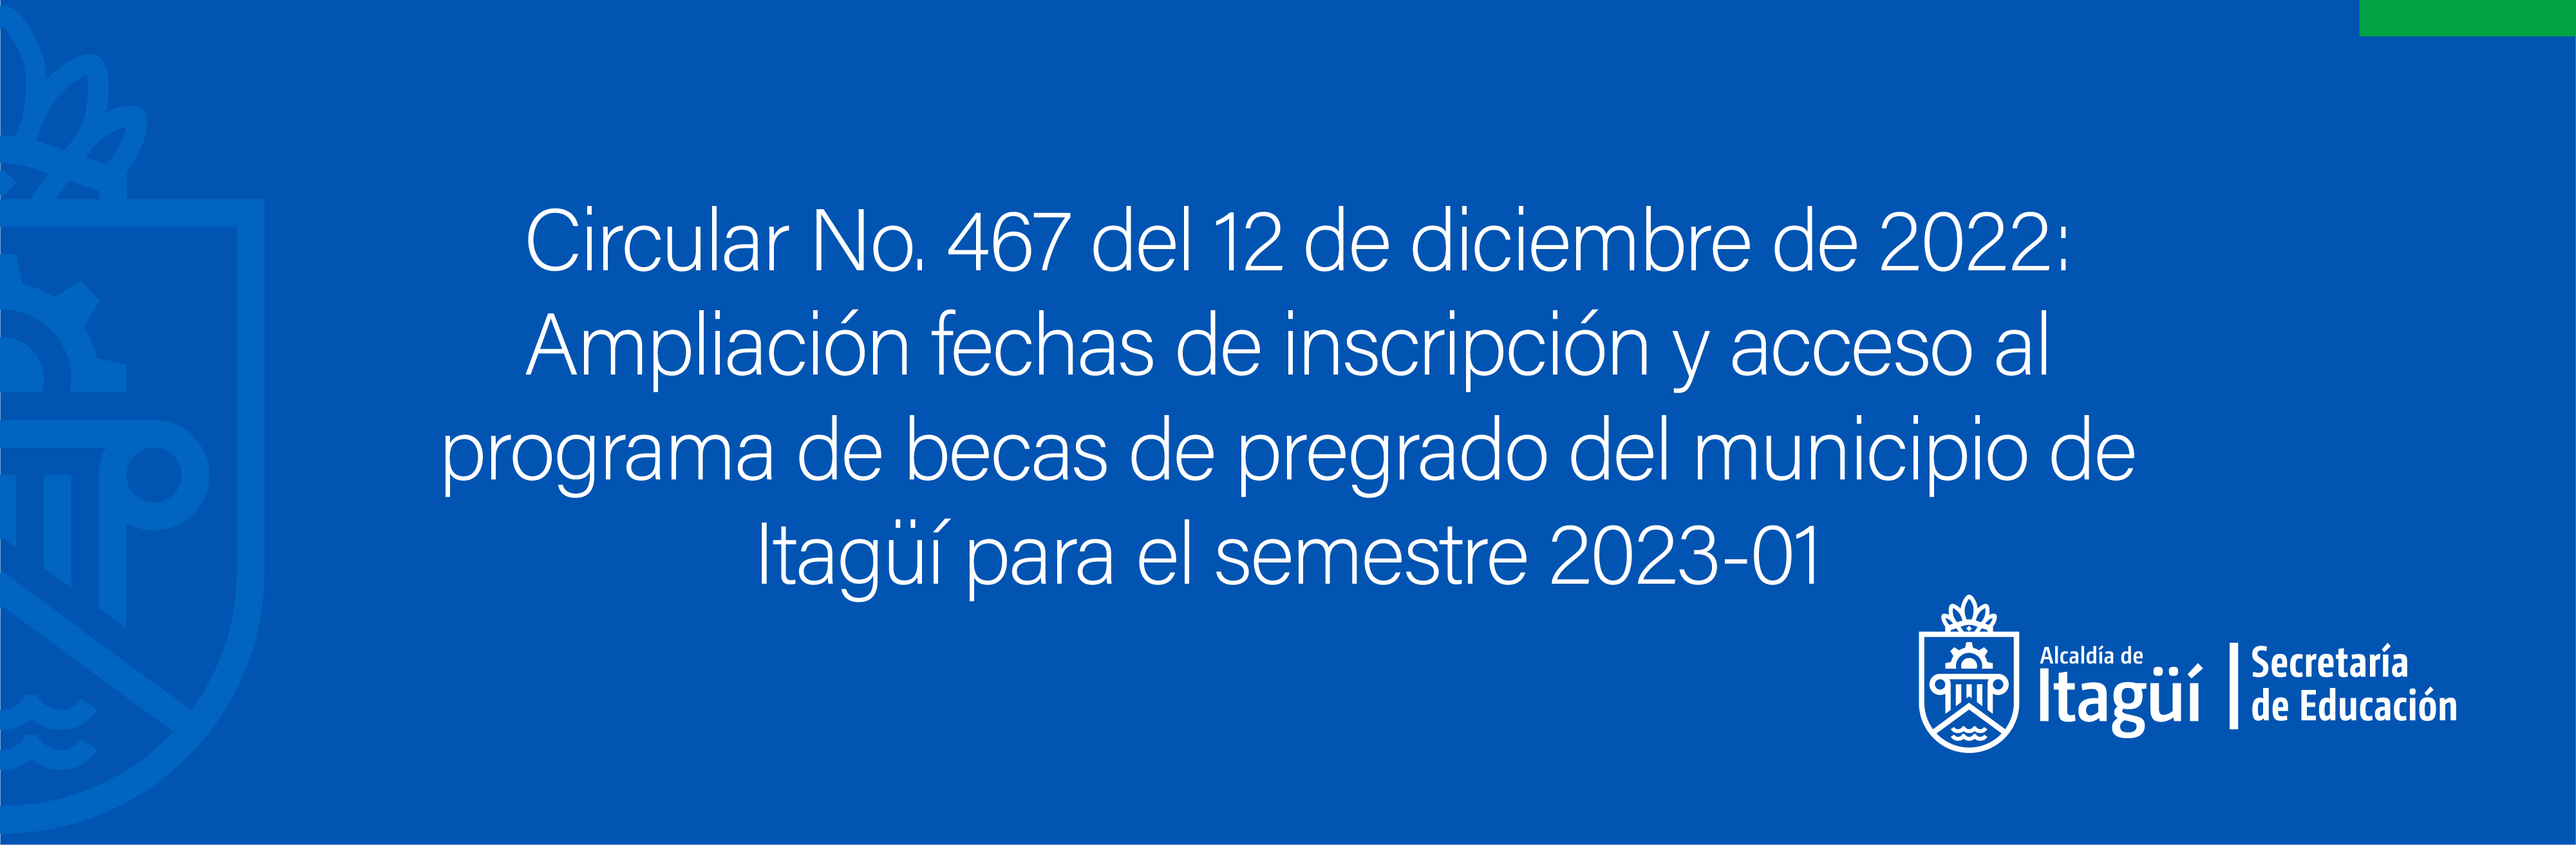 Circular No. 467 del 12 de diciembre de 2022: Ampliación fechas de inscripción y acceso al programa de becas de pregrado del municipio de  Itagüí para el semestre 2023-01